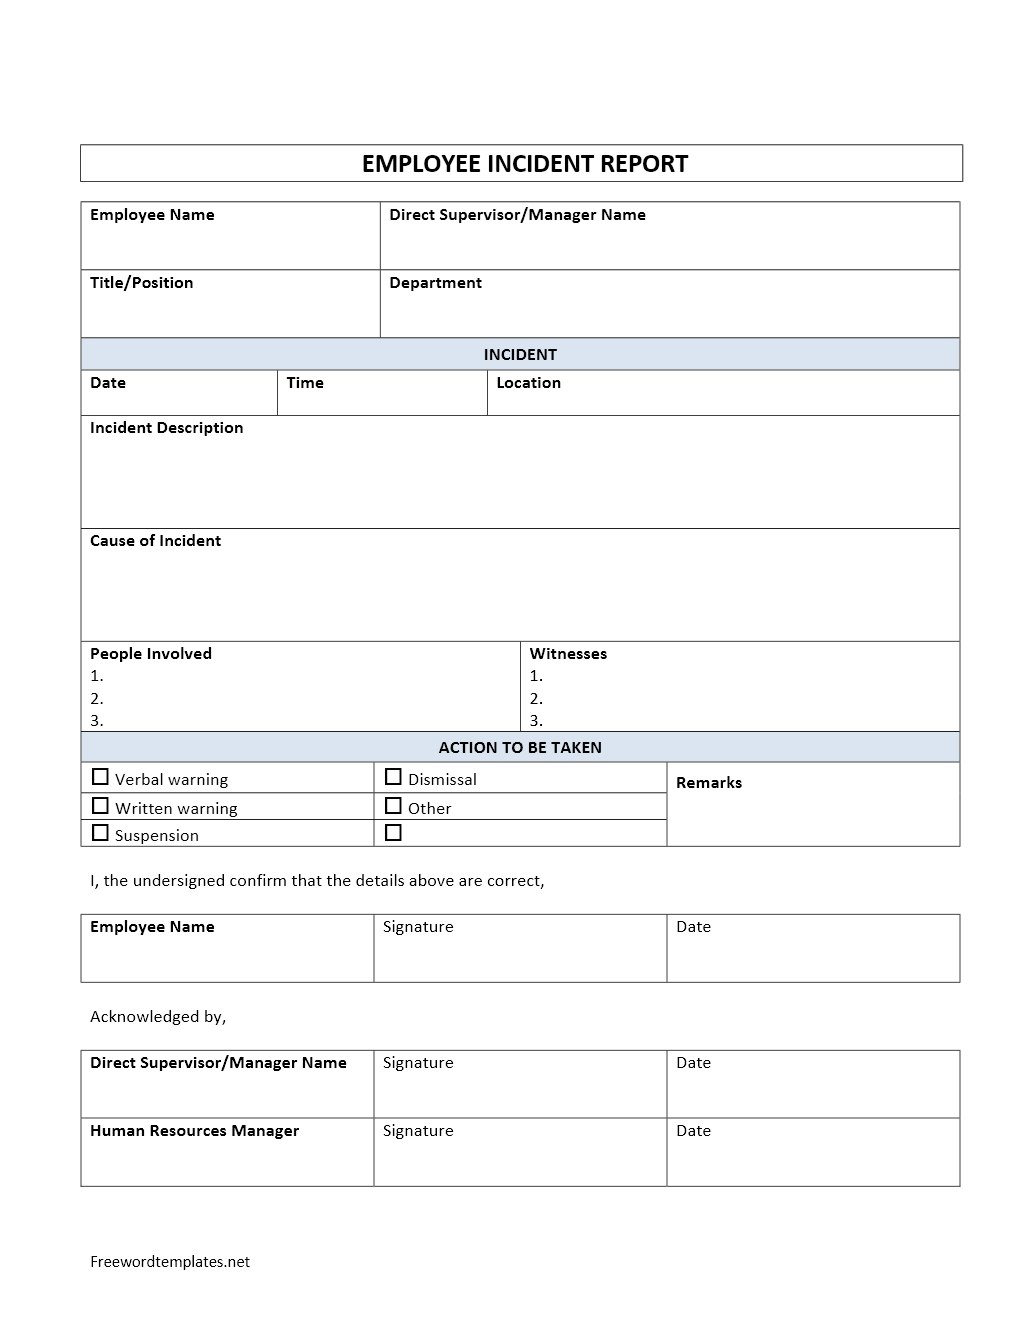 Employee Incident Report regarding Employee Incident Report Templates